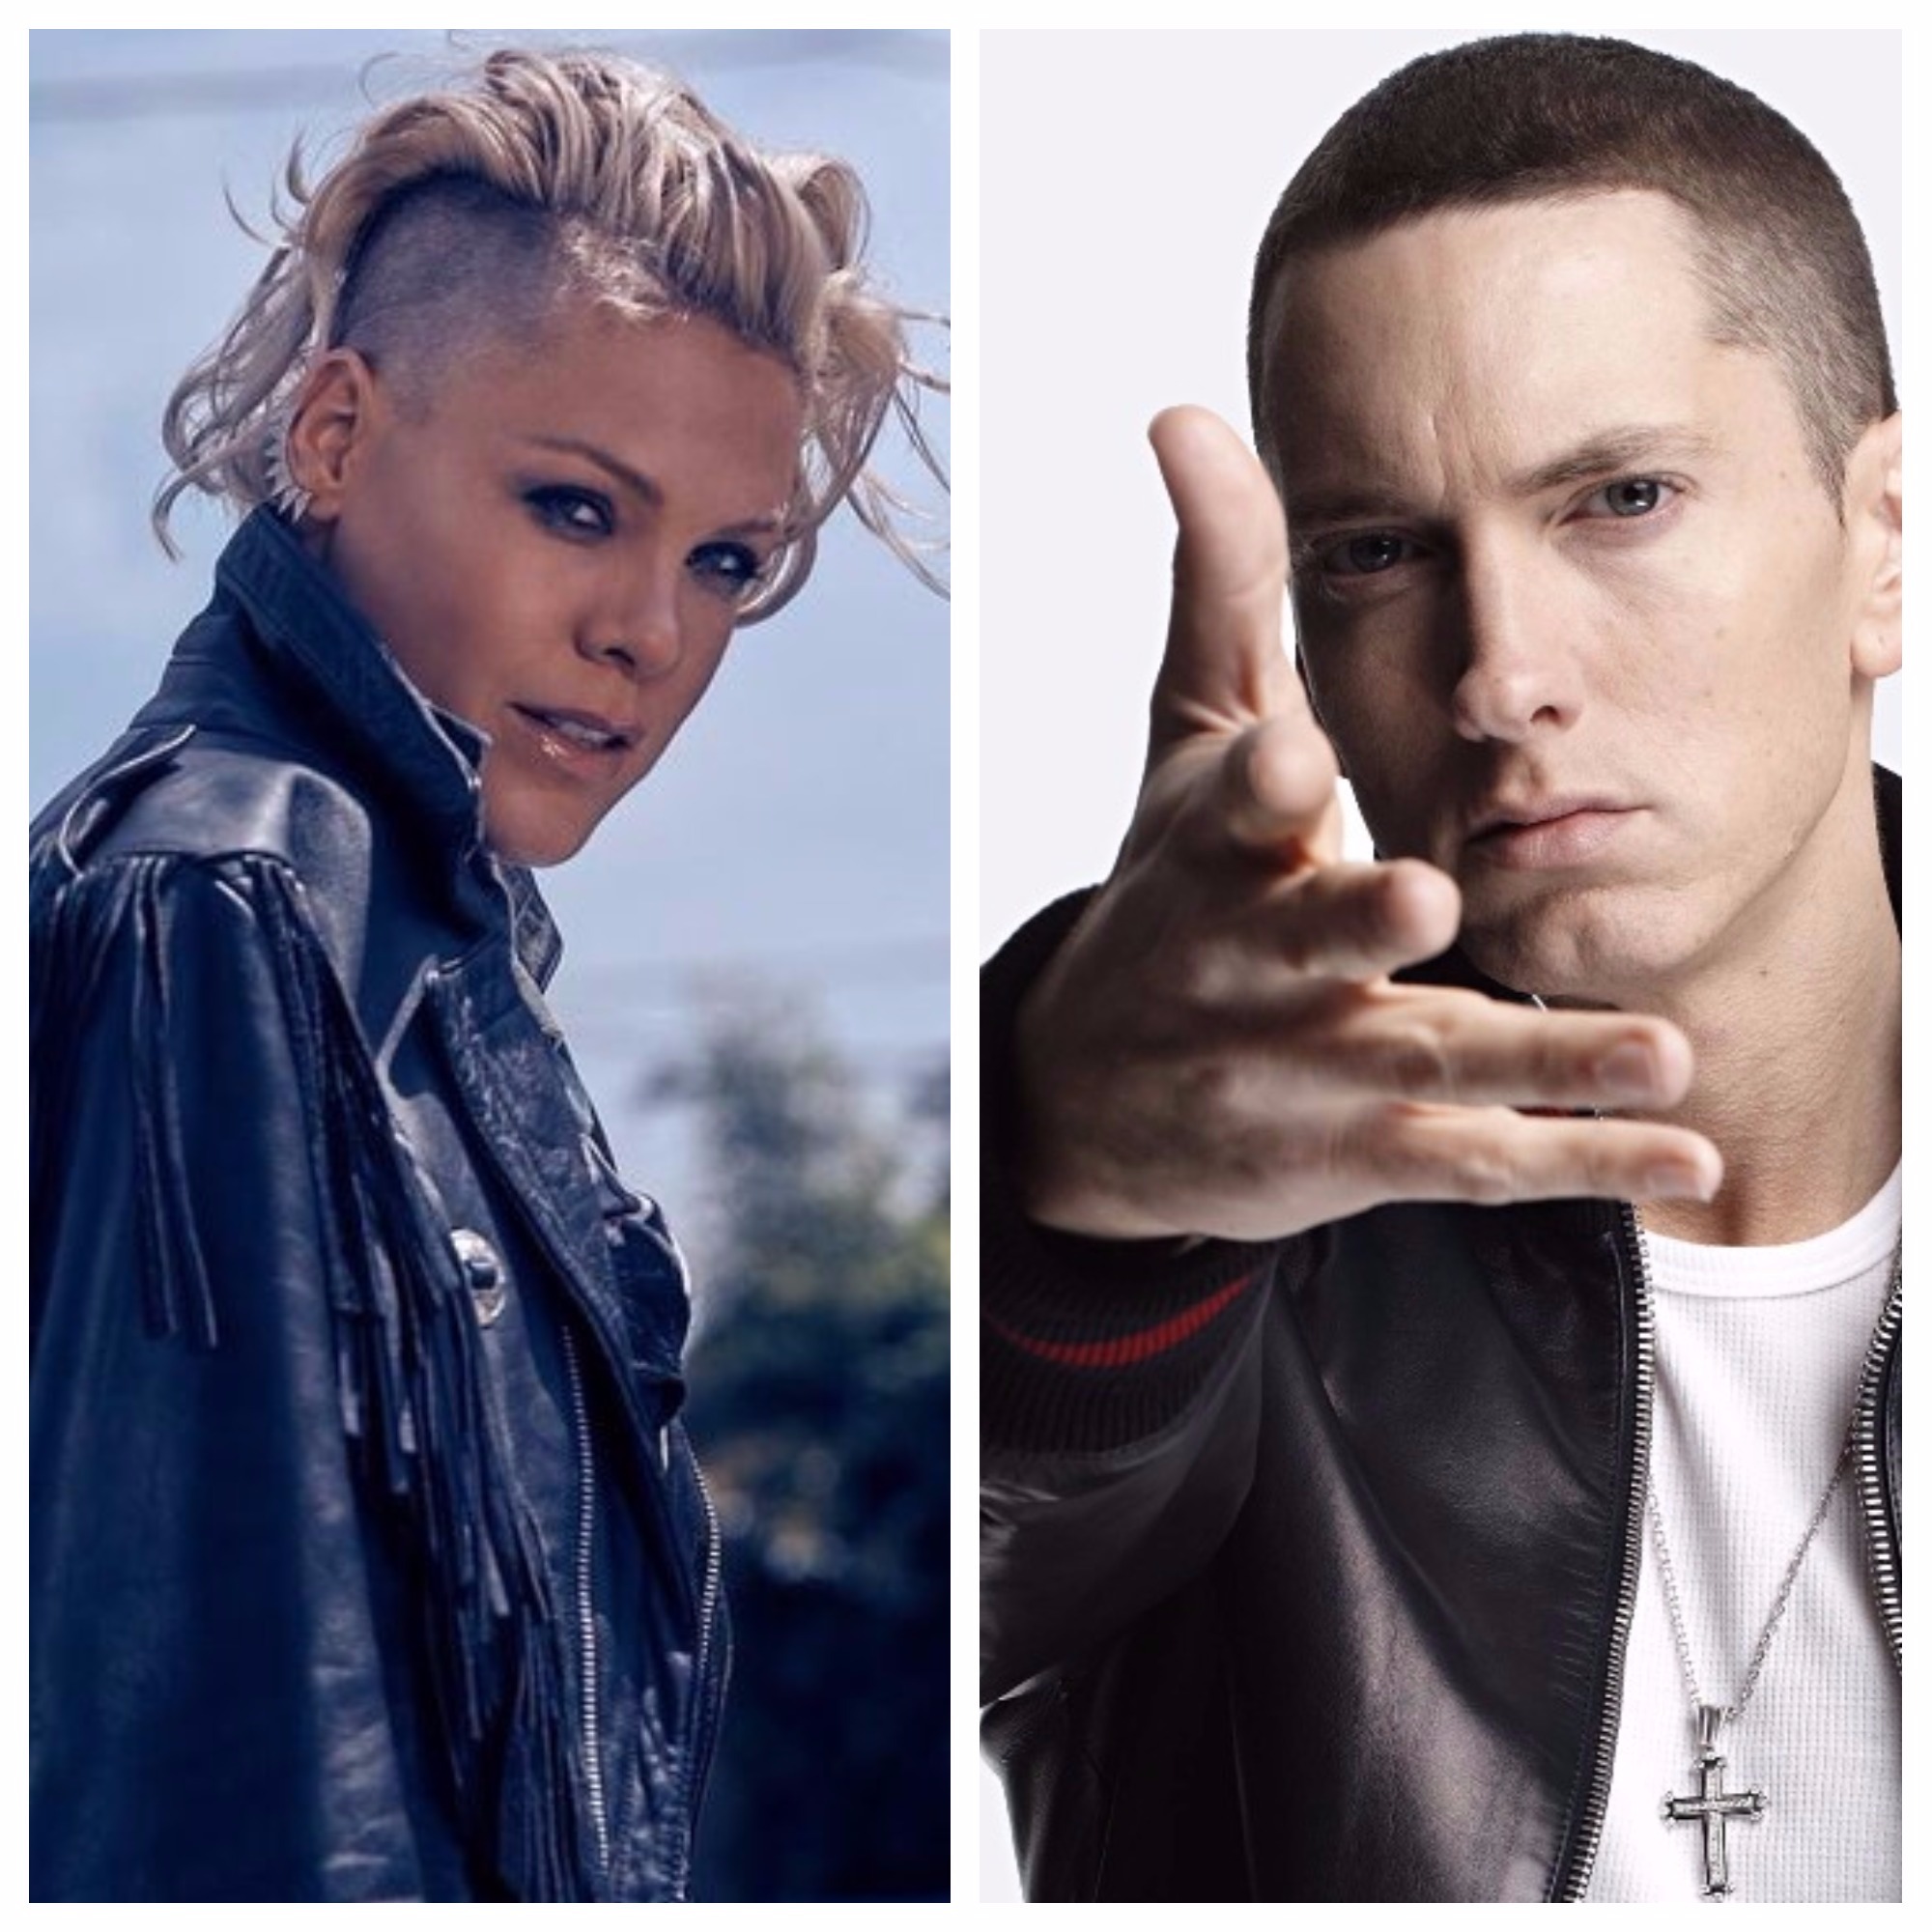 New Song P!nk & Eminem 'Revenge' That Grape Juice